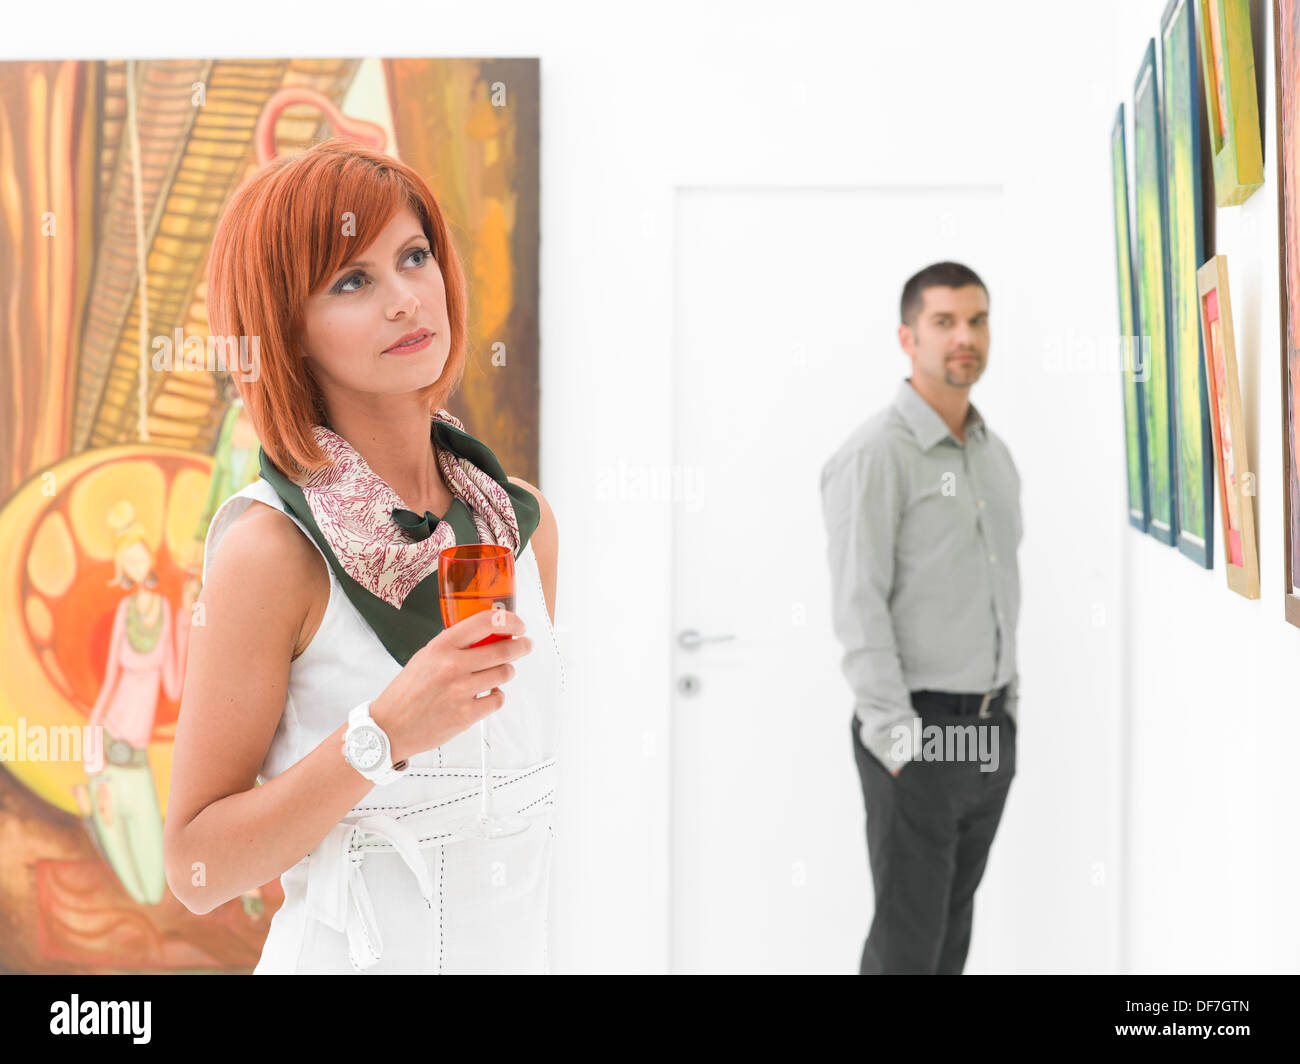 Homme d'admirer une belle jeune femme rousse dans une galerie d'art Banque D'Images